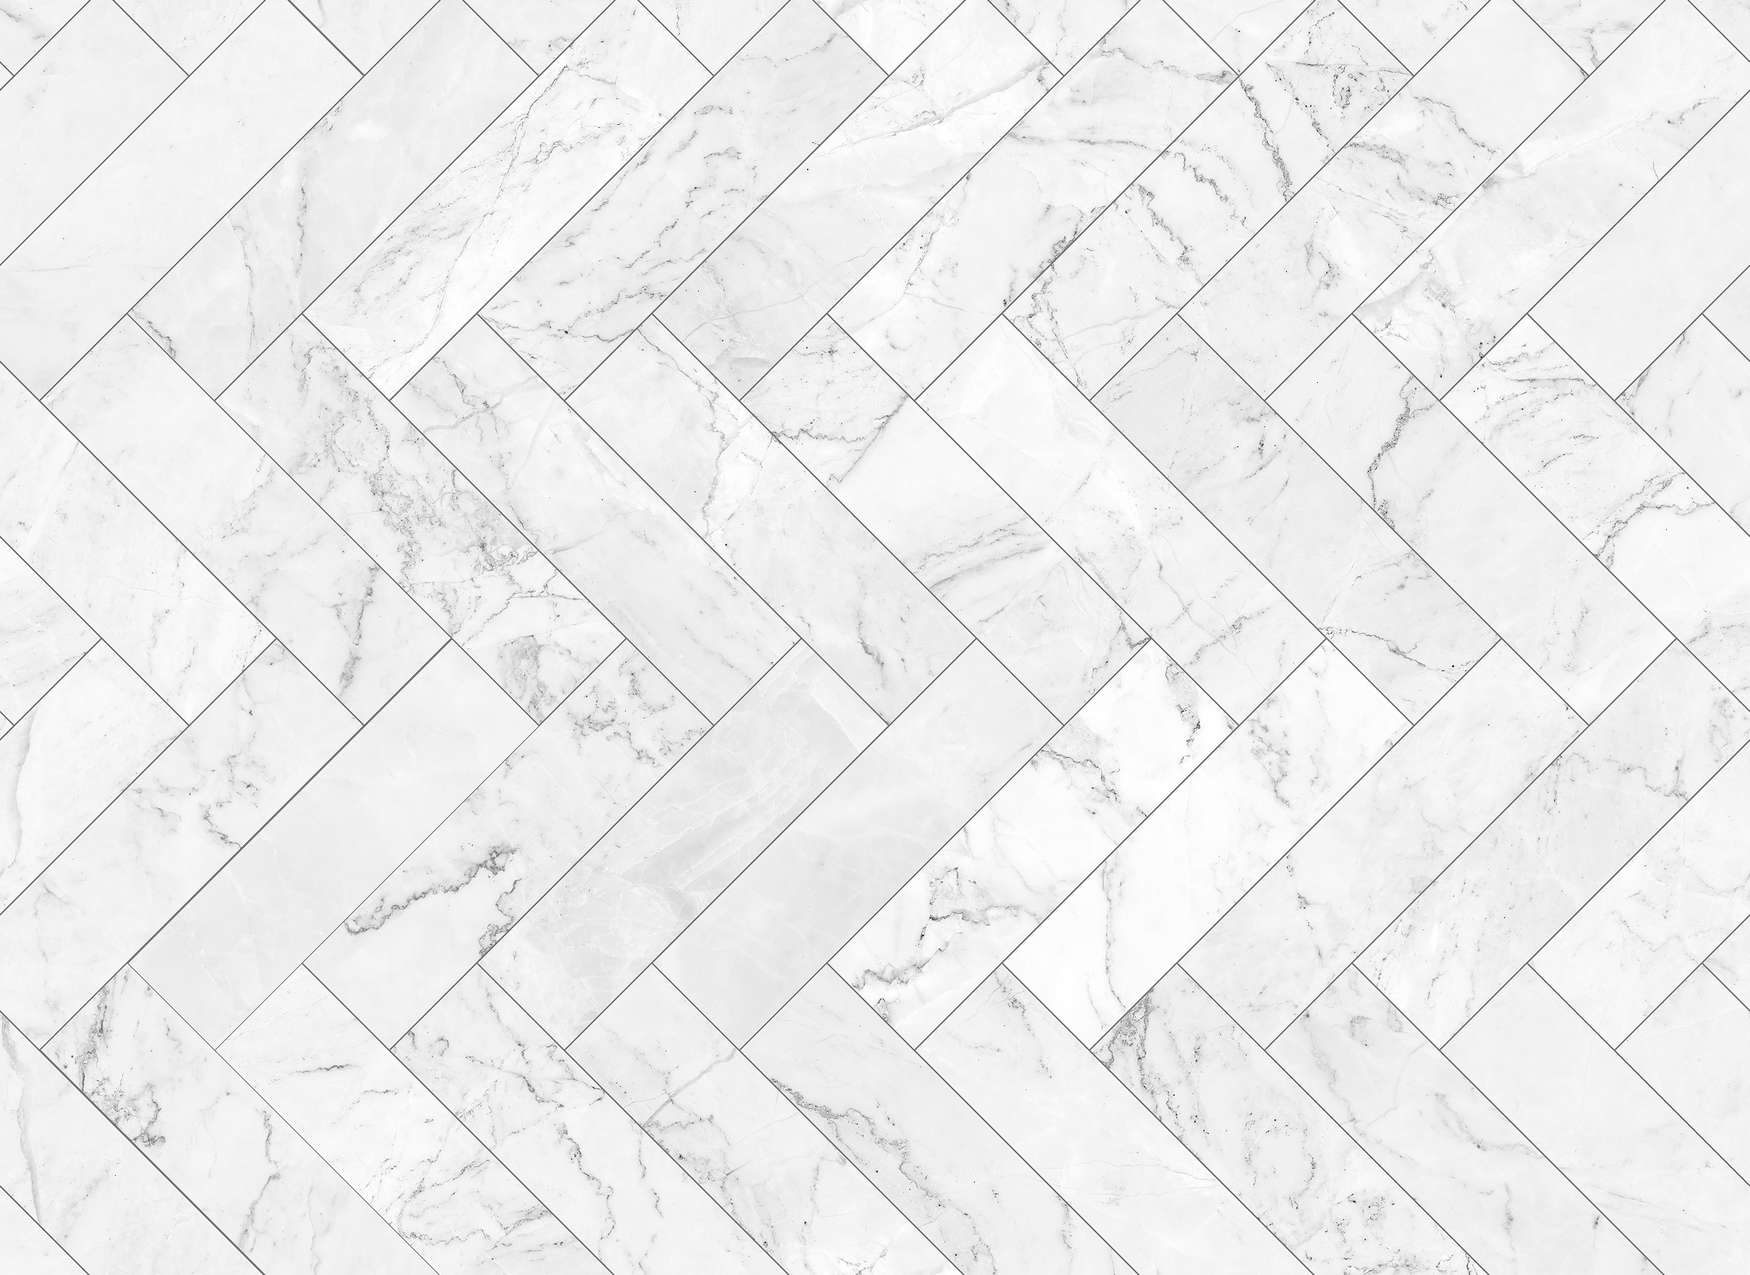             Papier peint marbre Motif carrelage - gris, blanc, noir
        